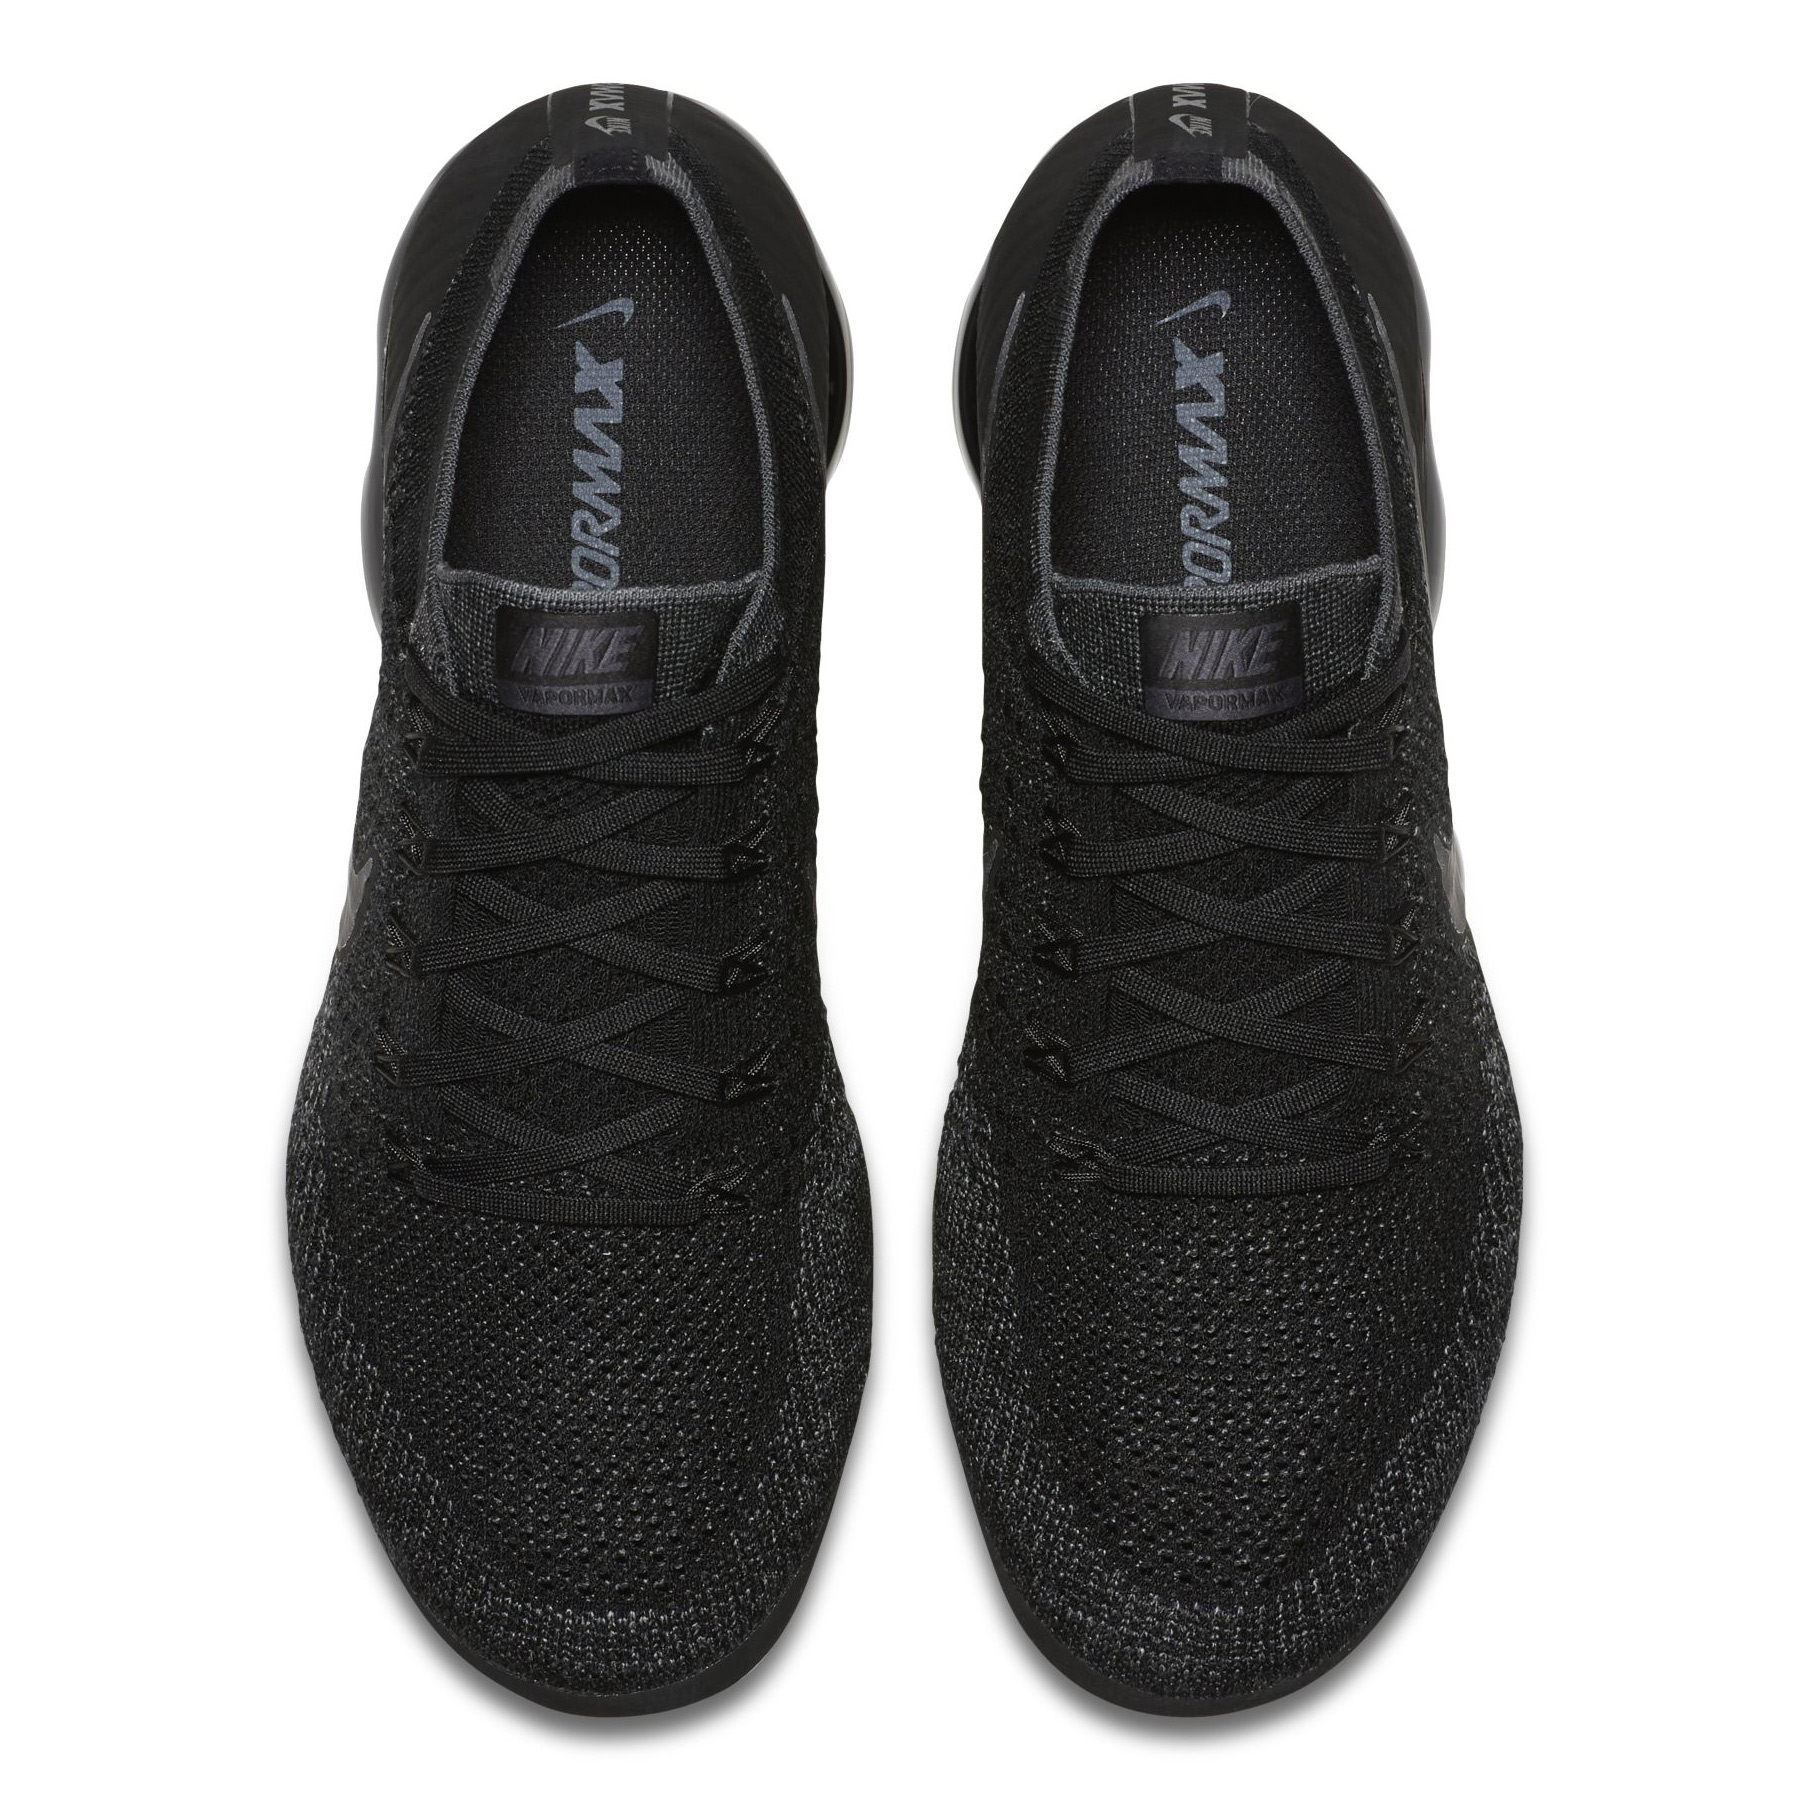 Nike VaporMax Triple Black Release Date